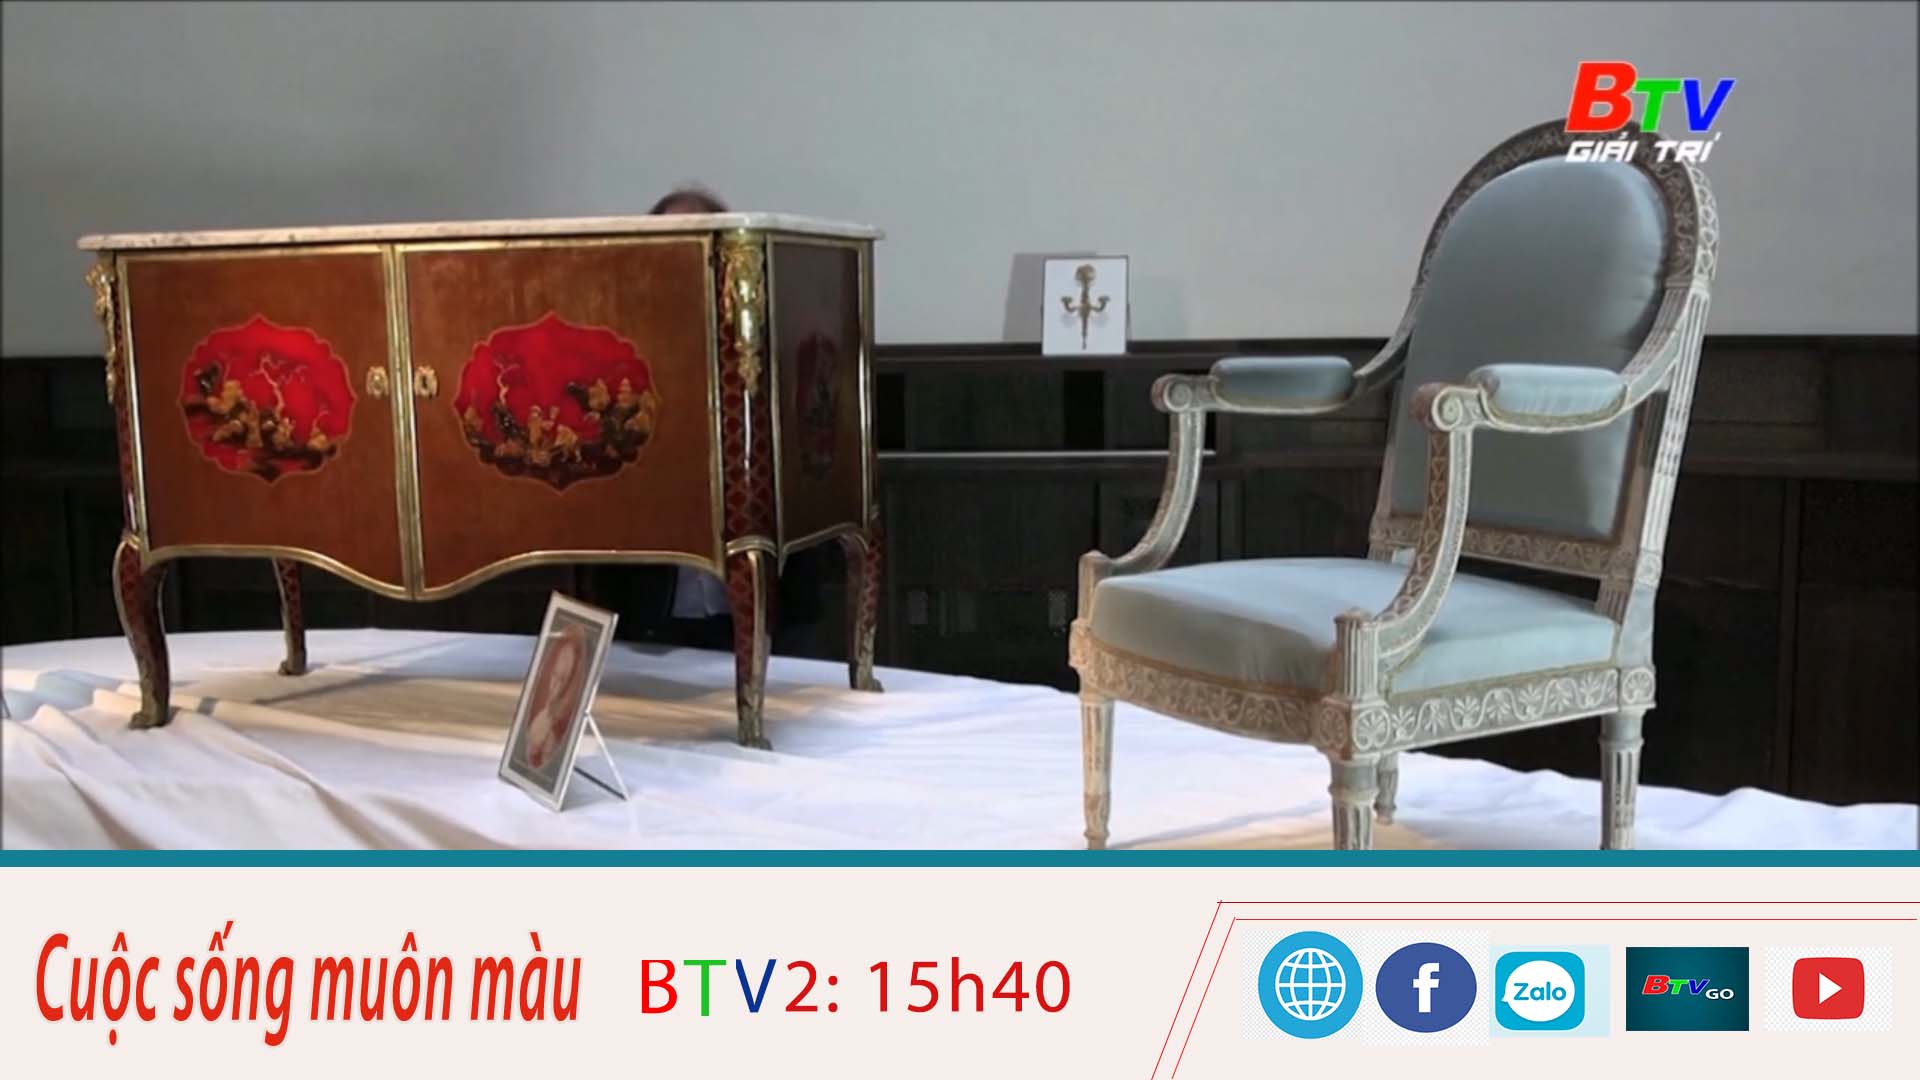 Đấu giá hai món đồ nội thất của Hoàng Gia Pháp thế kỷ 18